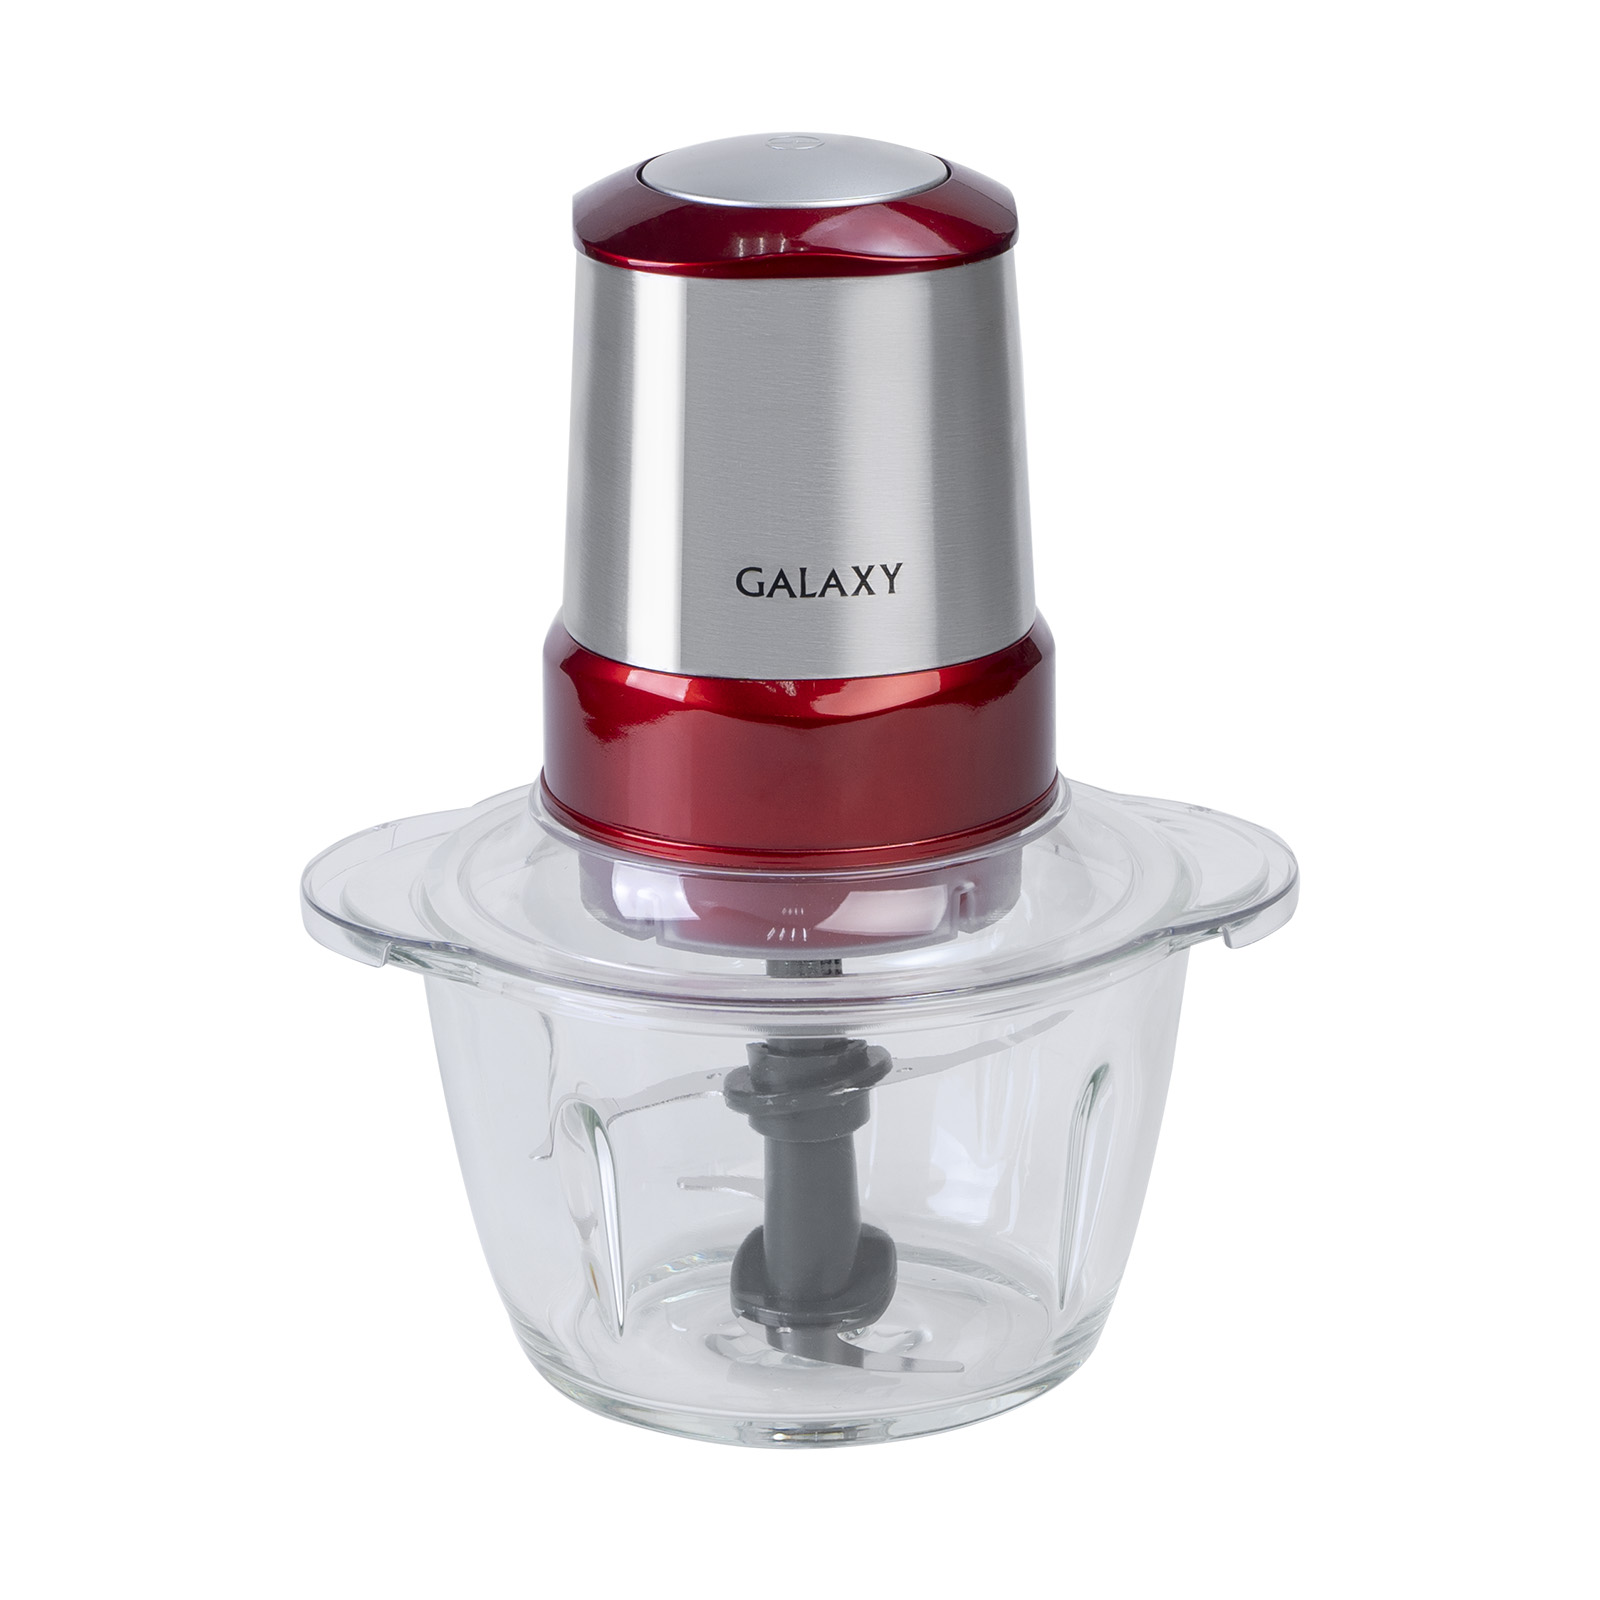 Измельчитель Galaxy GL 2354 Red измельчитель kitfort кт 3089 портативный пластик 22 вт 170 мл 1 скорость бело оранжевый